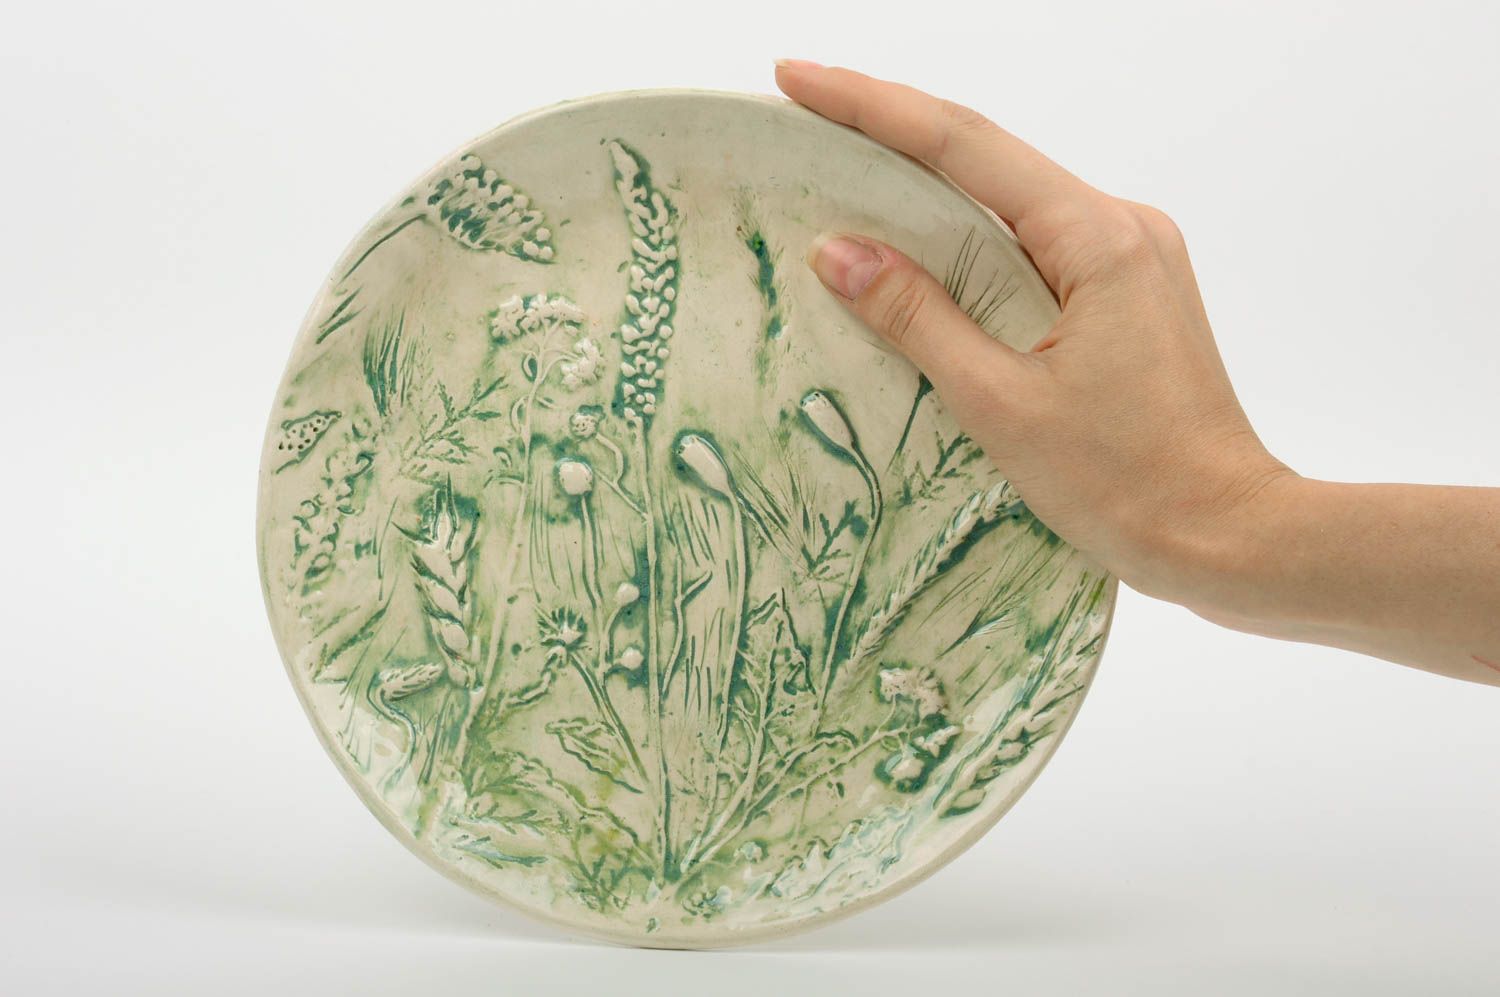 Plato de barro artículo de cerámica regalo original hecho a mano con ornamentos foto 3